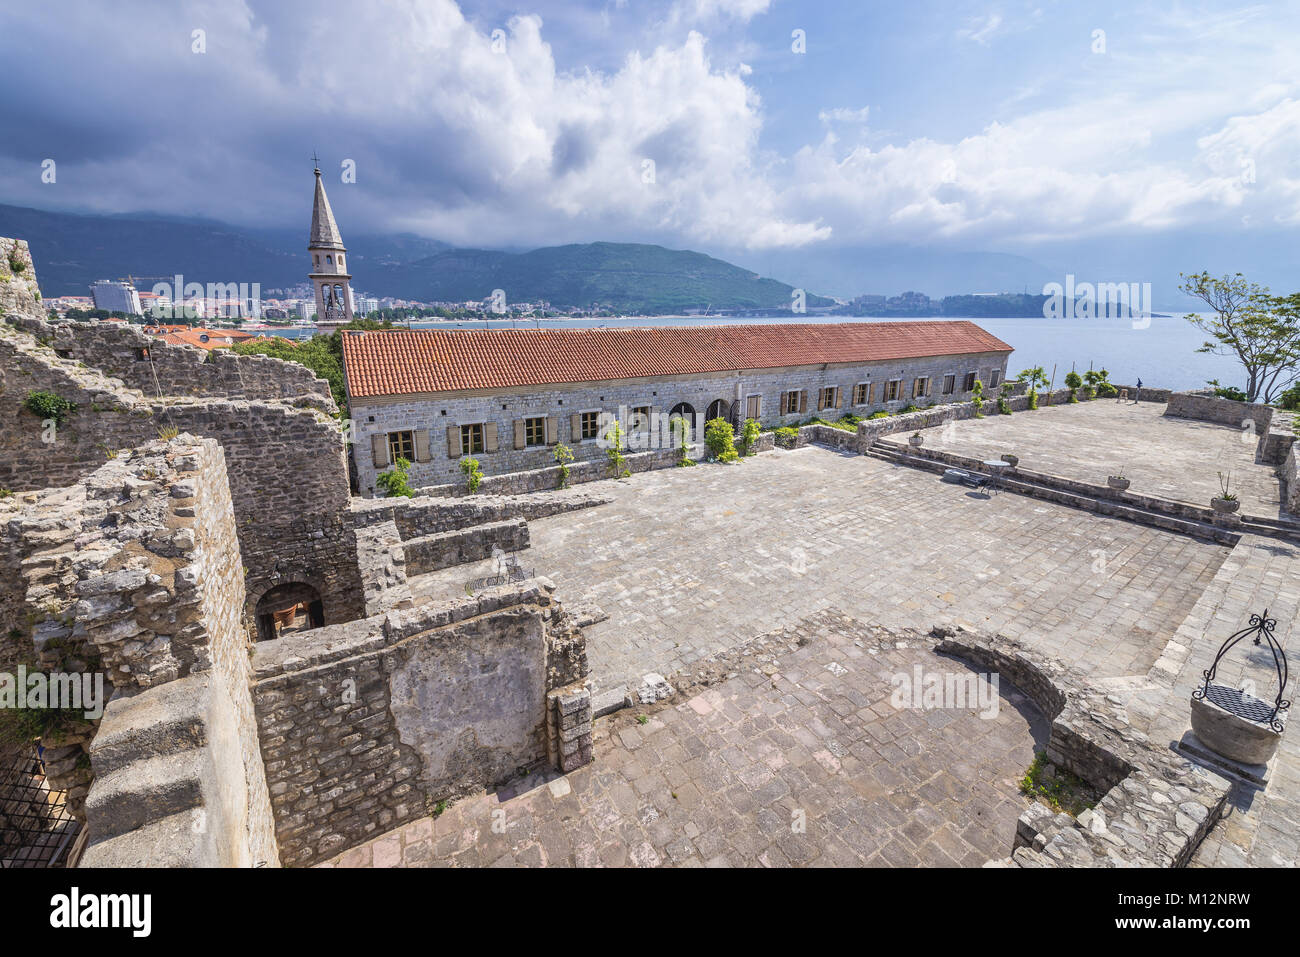 Sul tetto della cittadella, la città vecchia di Budva città sul mare Adriatico costa in Montenegro. Vista con il campanile di San Giovanni Battista cattedrale Foto Stock